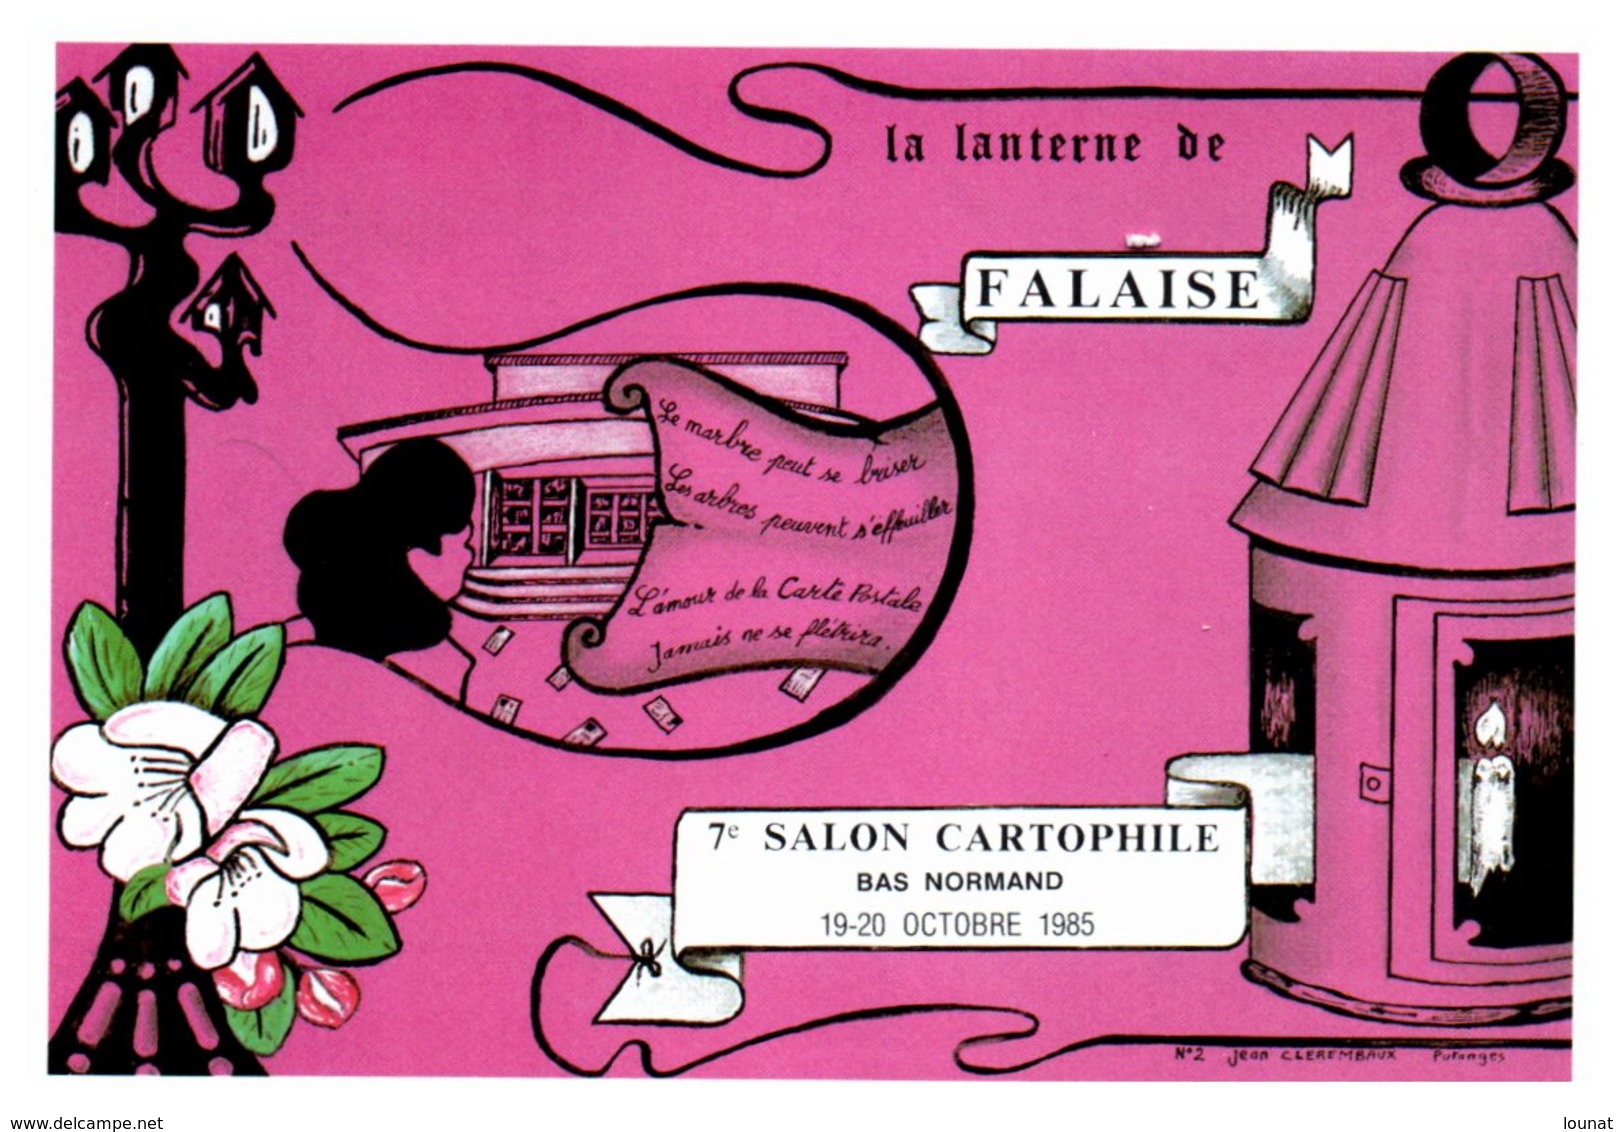 Bourse Et Salon De Collection - FALAISE - La Lanterne De Falaise - 7 ème Salon Cartophile  - Année 1985 - Collector Fairs & Bourses